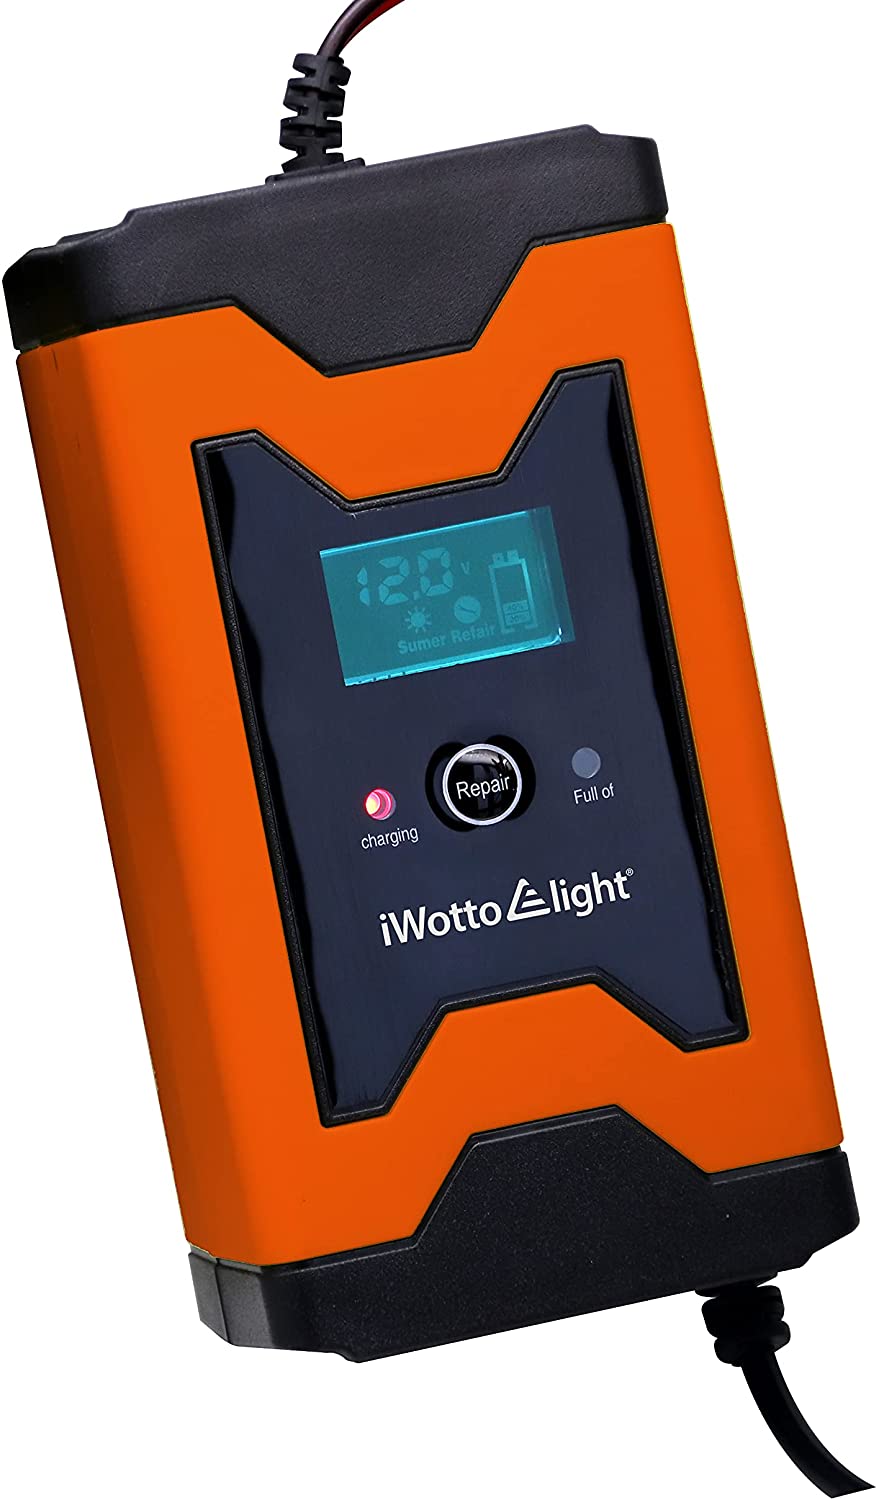 iWotto E Light Cargador Batería de Coche o Moto 6A 12V